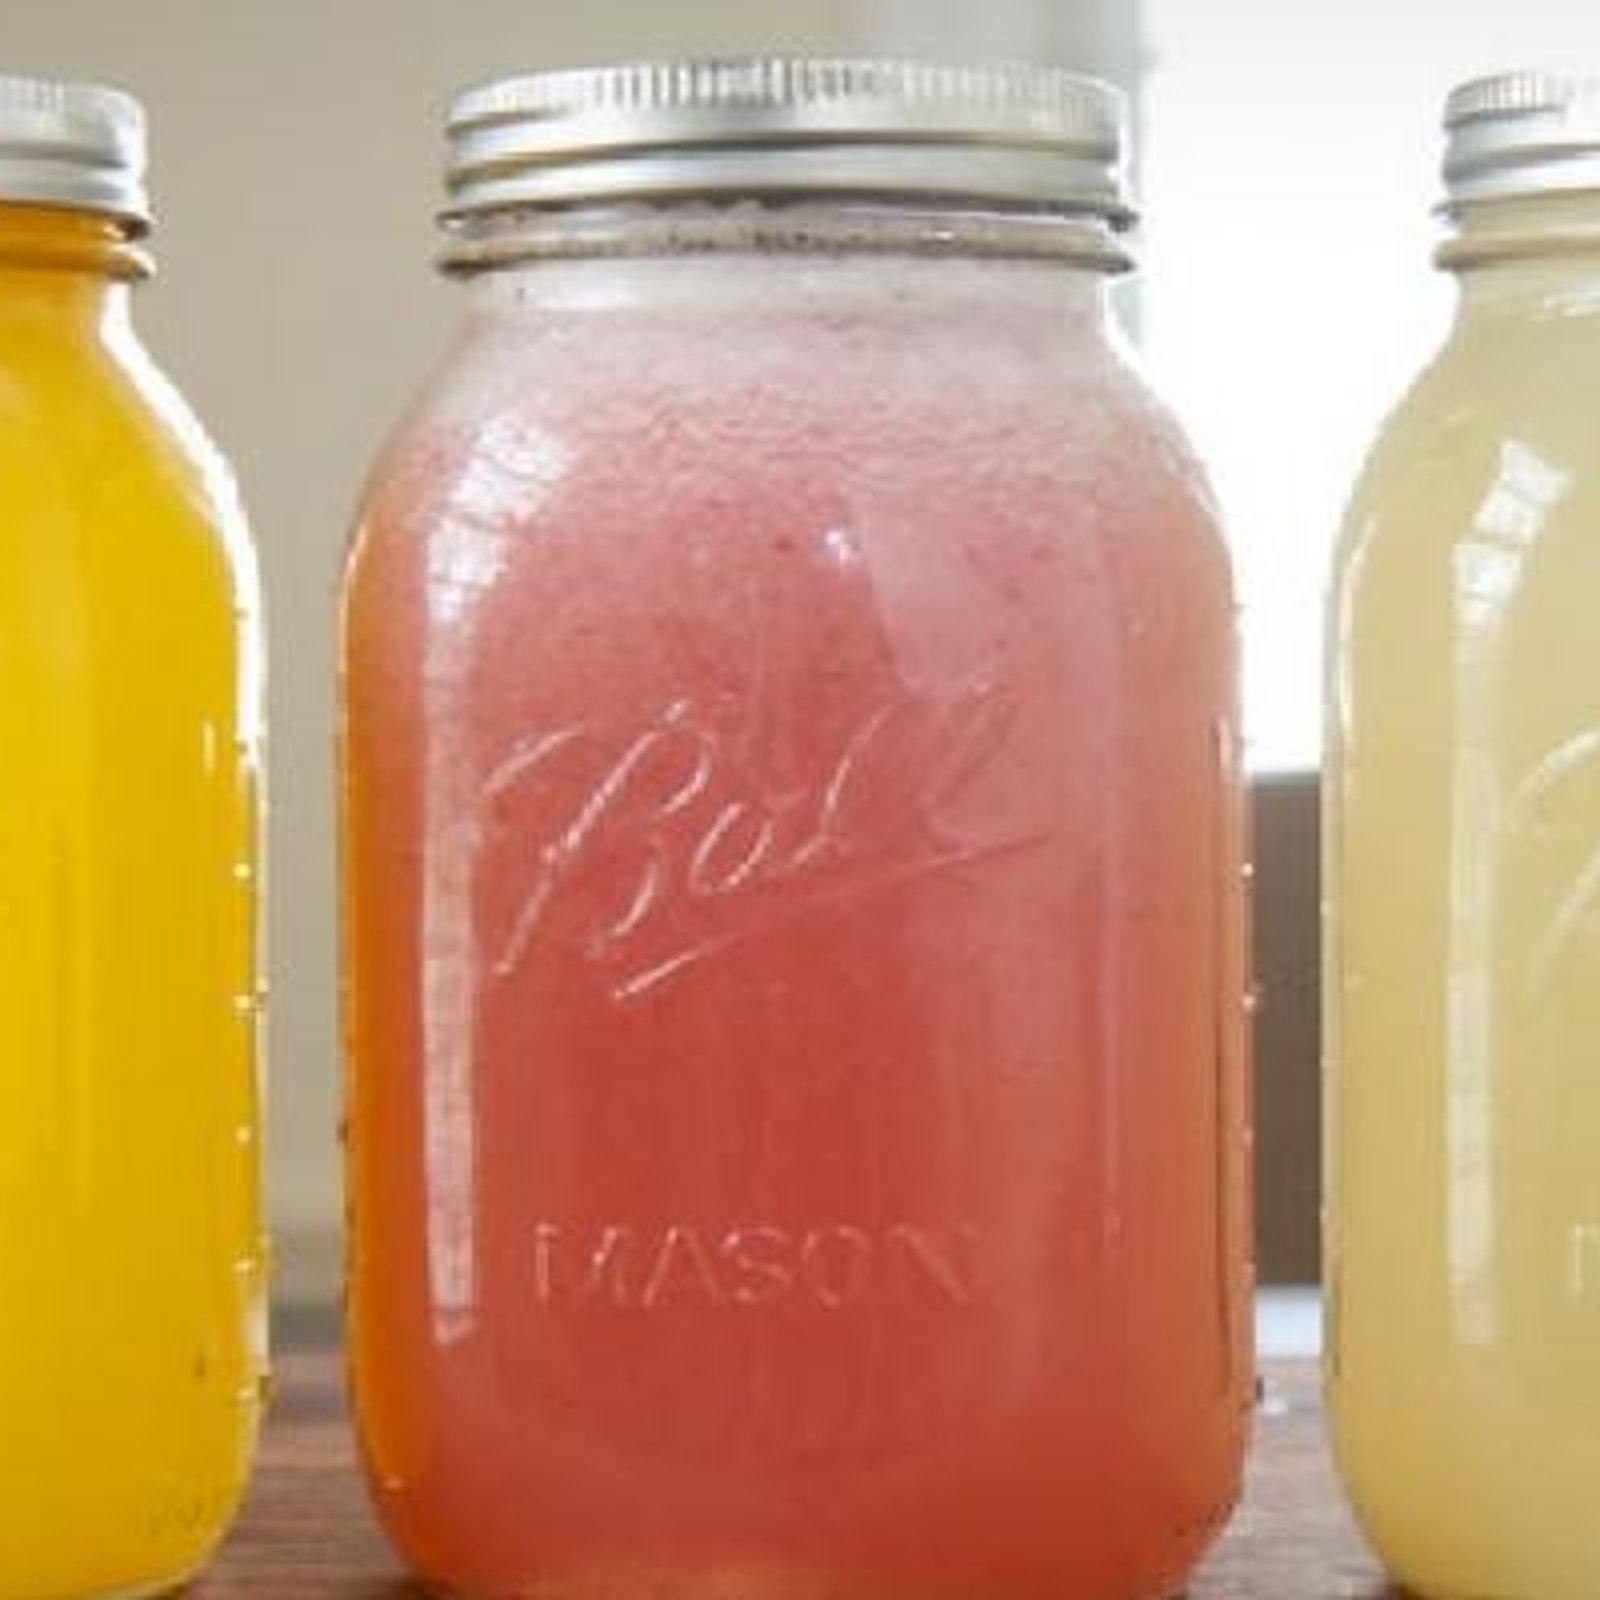 Recette de Gatorade maison 100% naturelle : Faites le plein d'électrolytes avec cette boisson sans sucre raffiné